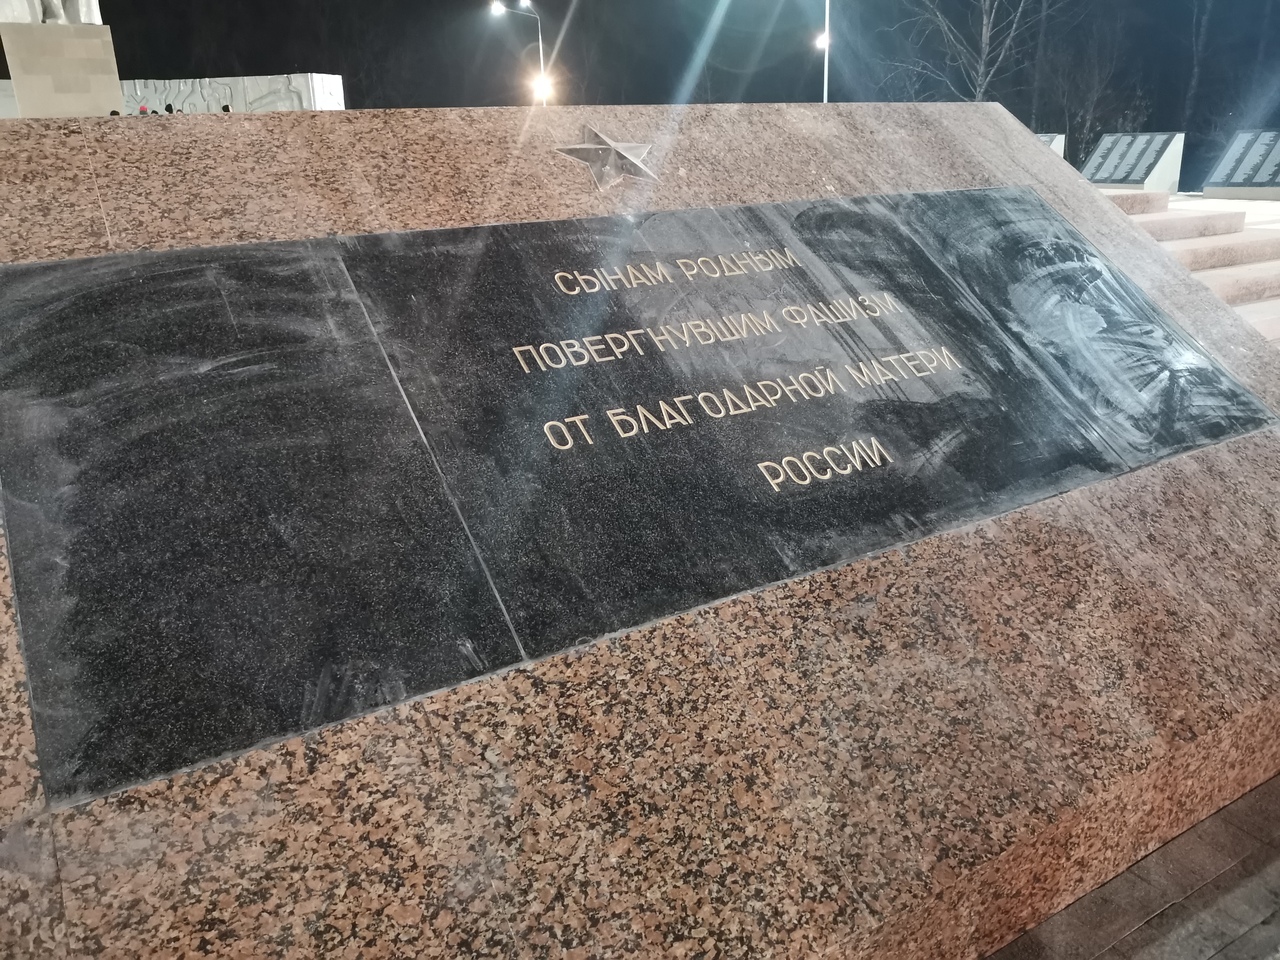 Центральный памятный пилон на мемориале юные спорстмены использовали в качестве трамплина